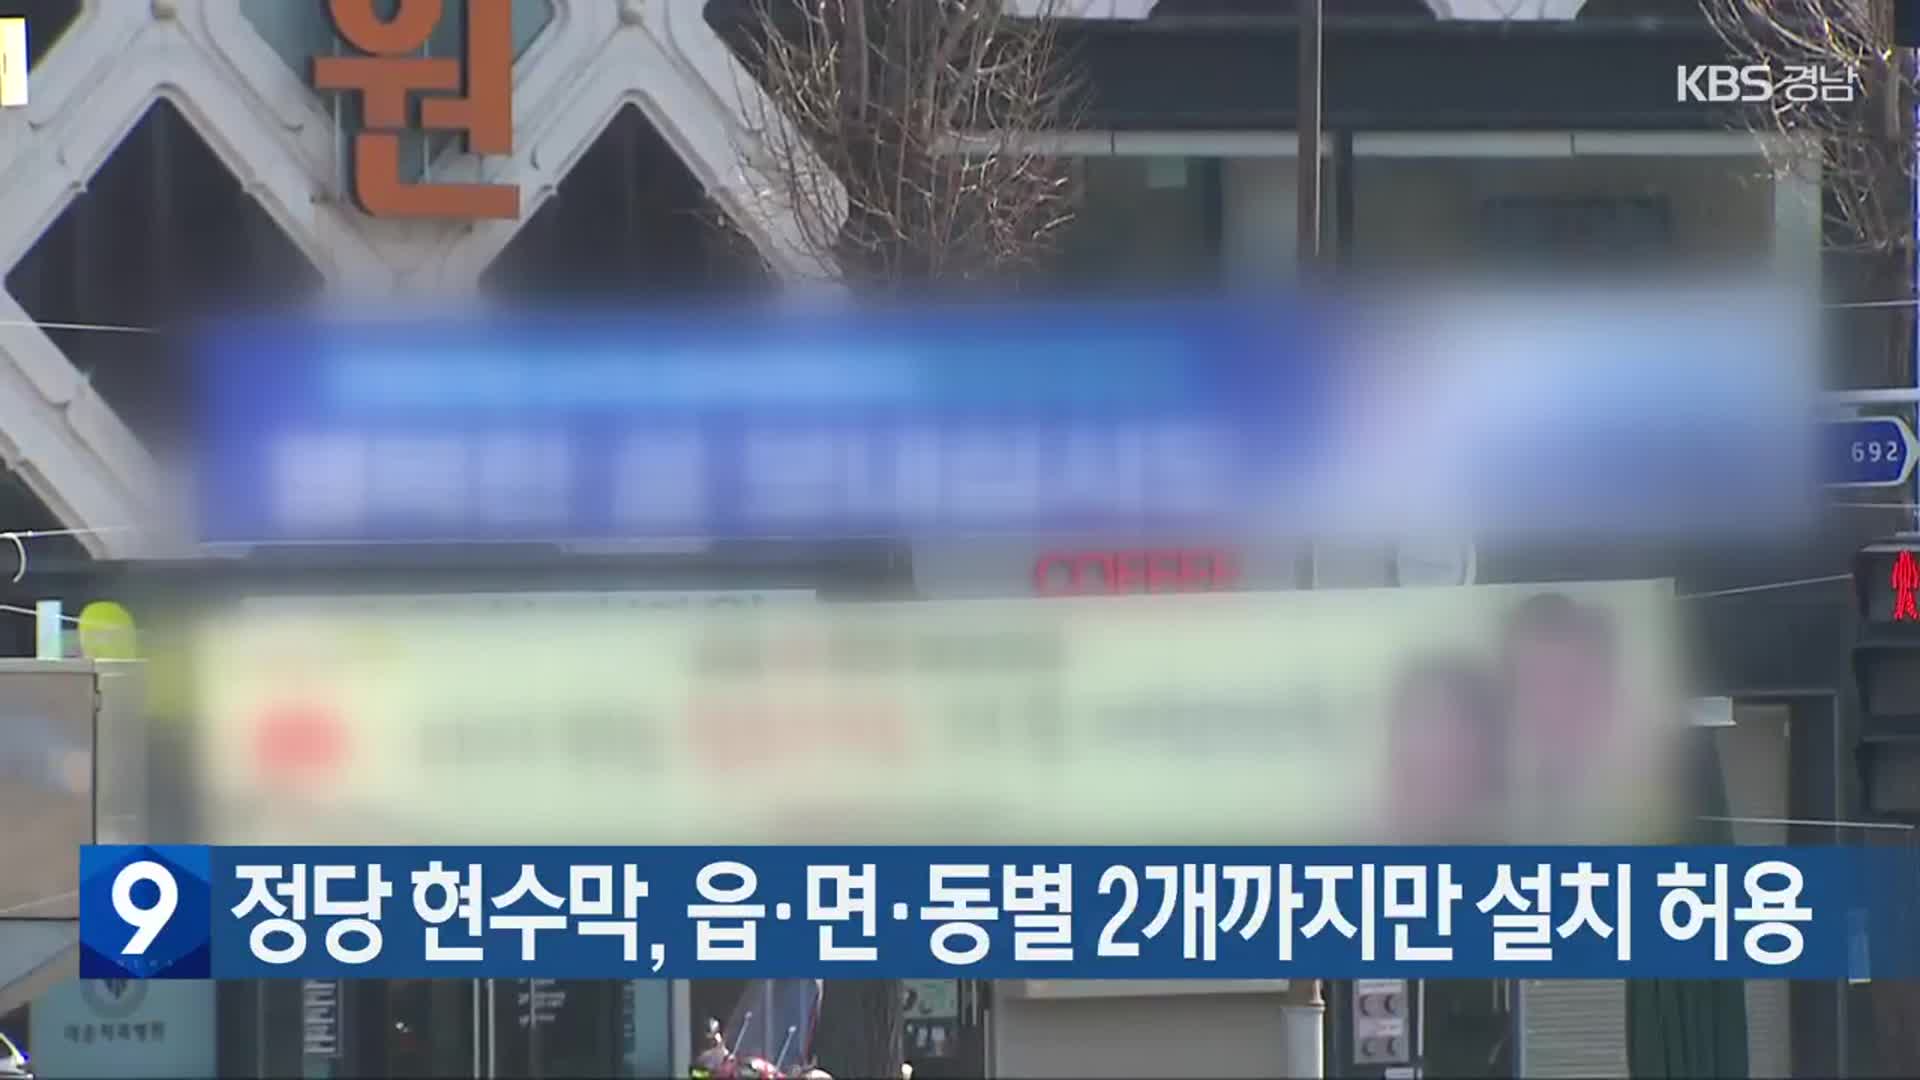 정당 현수막, 읍·면·동별 2개까지만 설치 허용